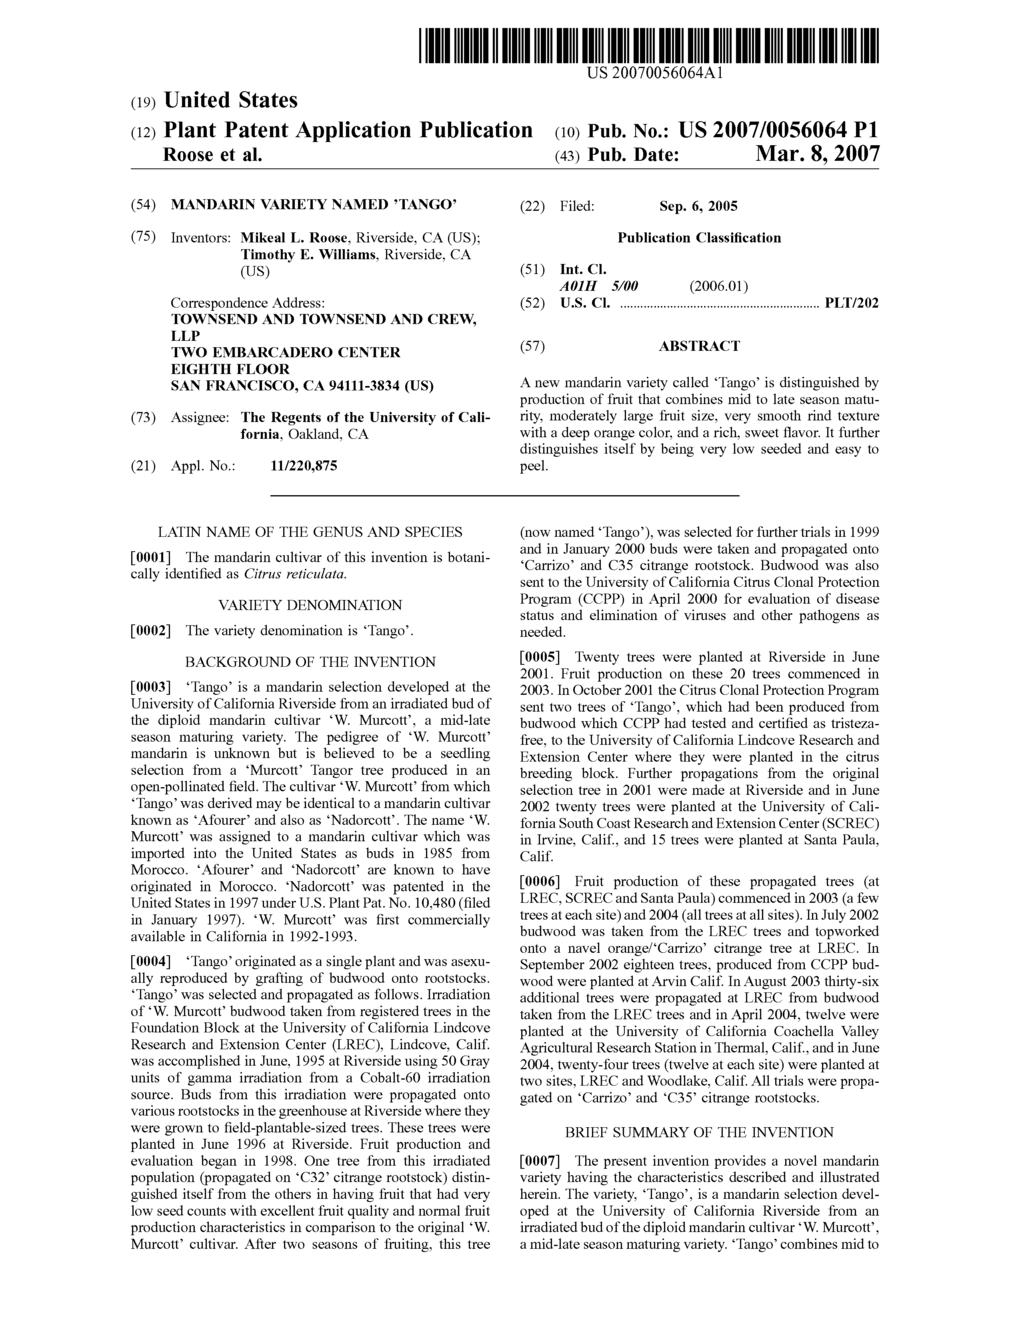 (19) United States (12) Plant Patent Application Publication R00se et al. US 2007.0056.064A1 (10) Pub. No.: US 2007/0056064 P1 (43) Pub. Date: Mar.